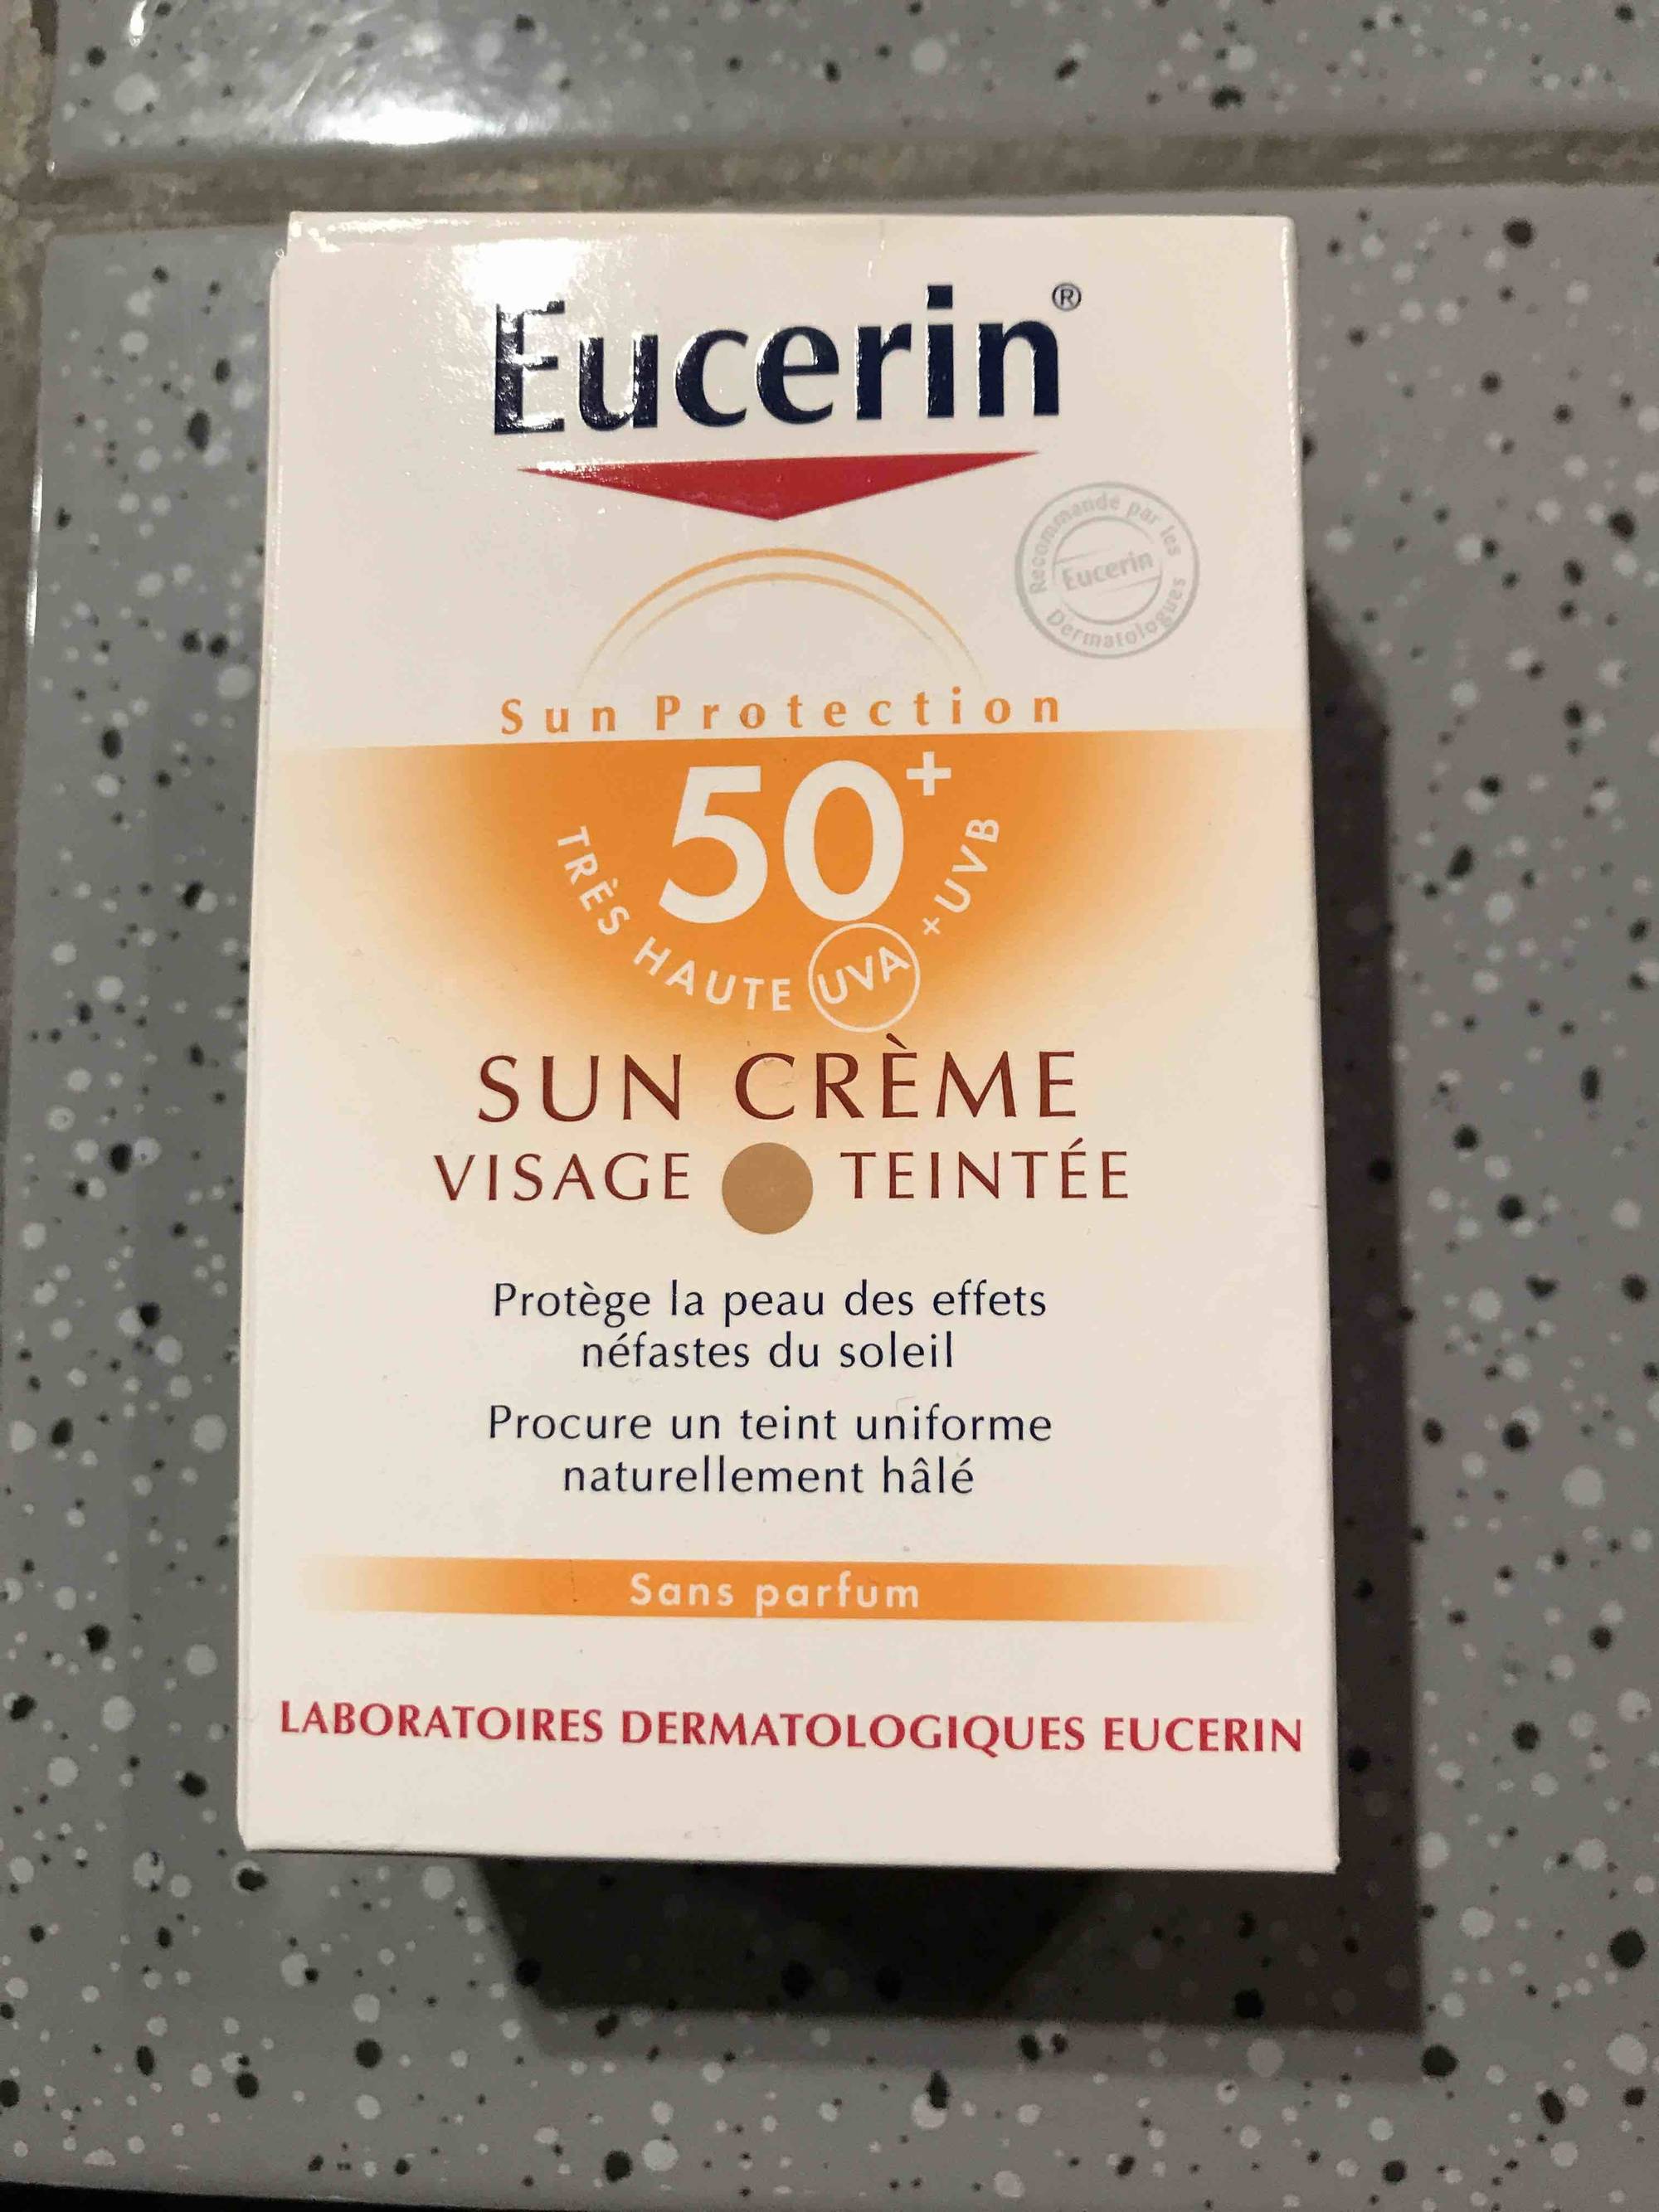 EUCERIN - Sun protection crème visage teintée SPF 50+